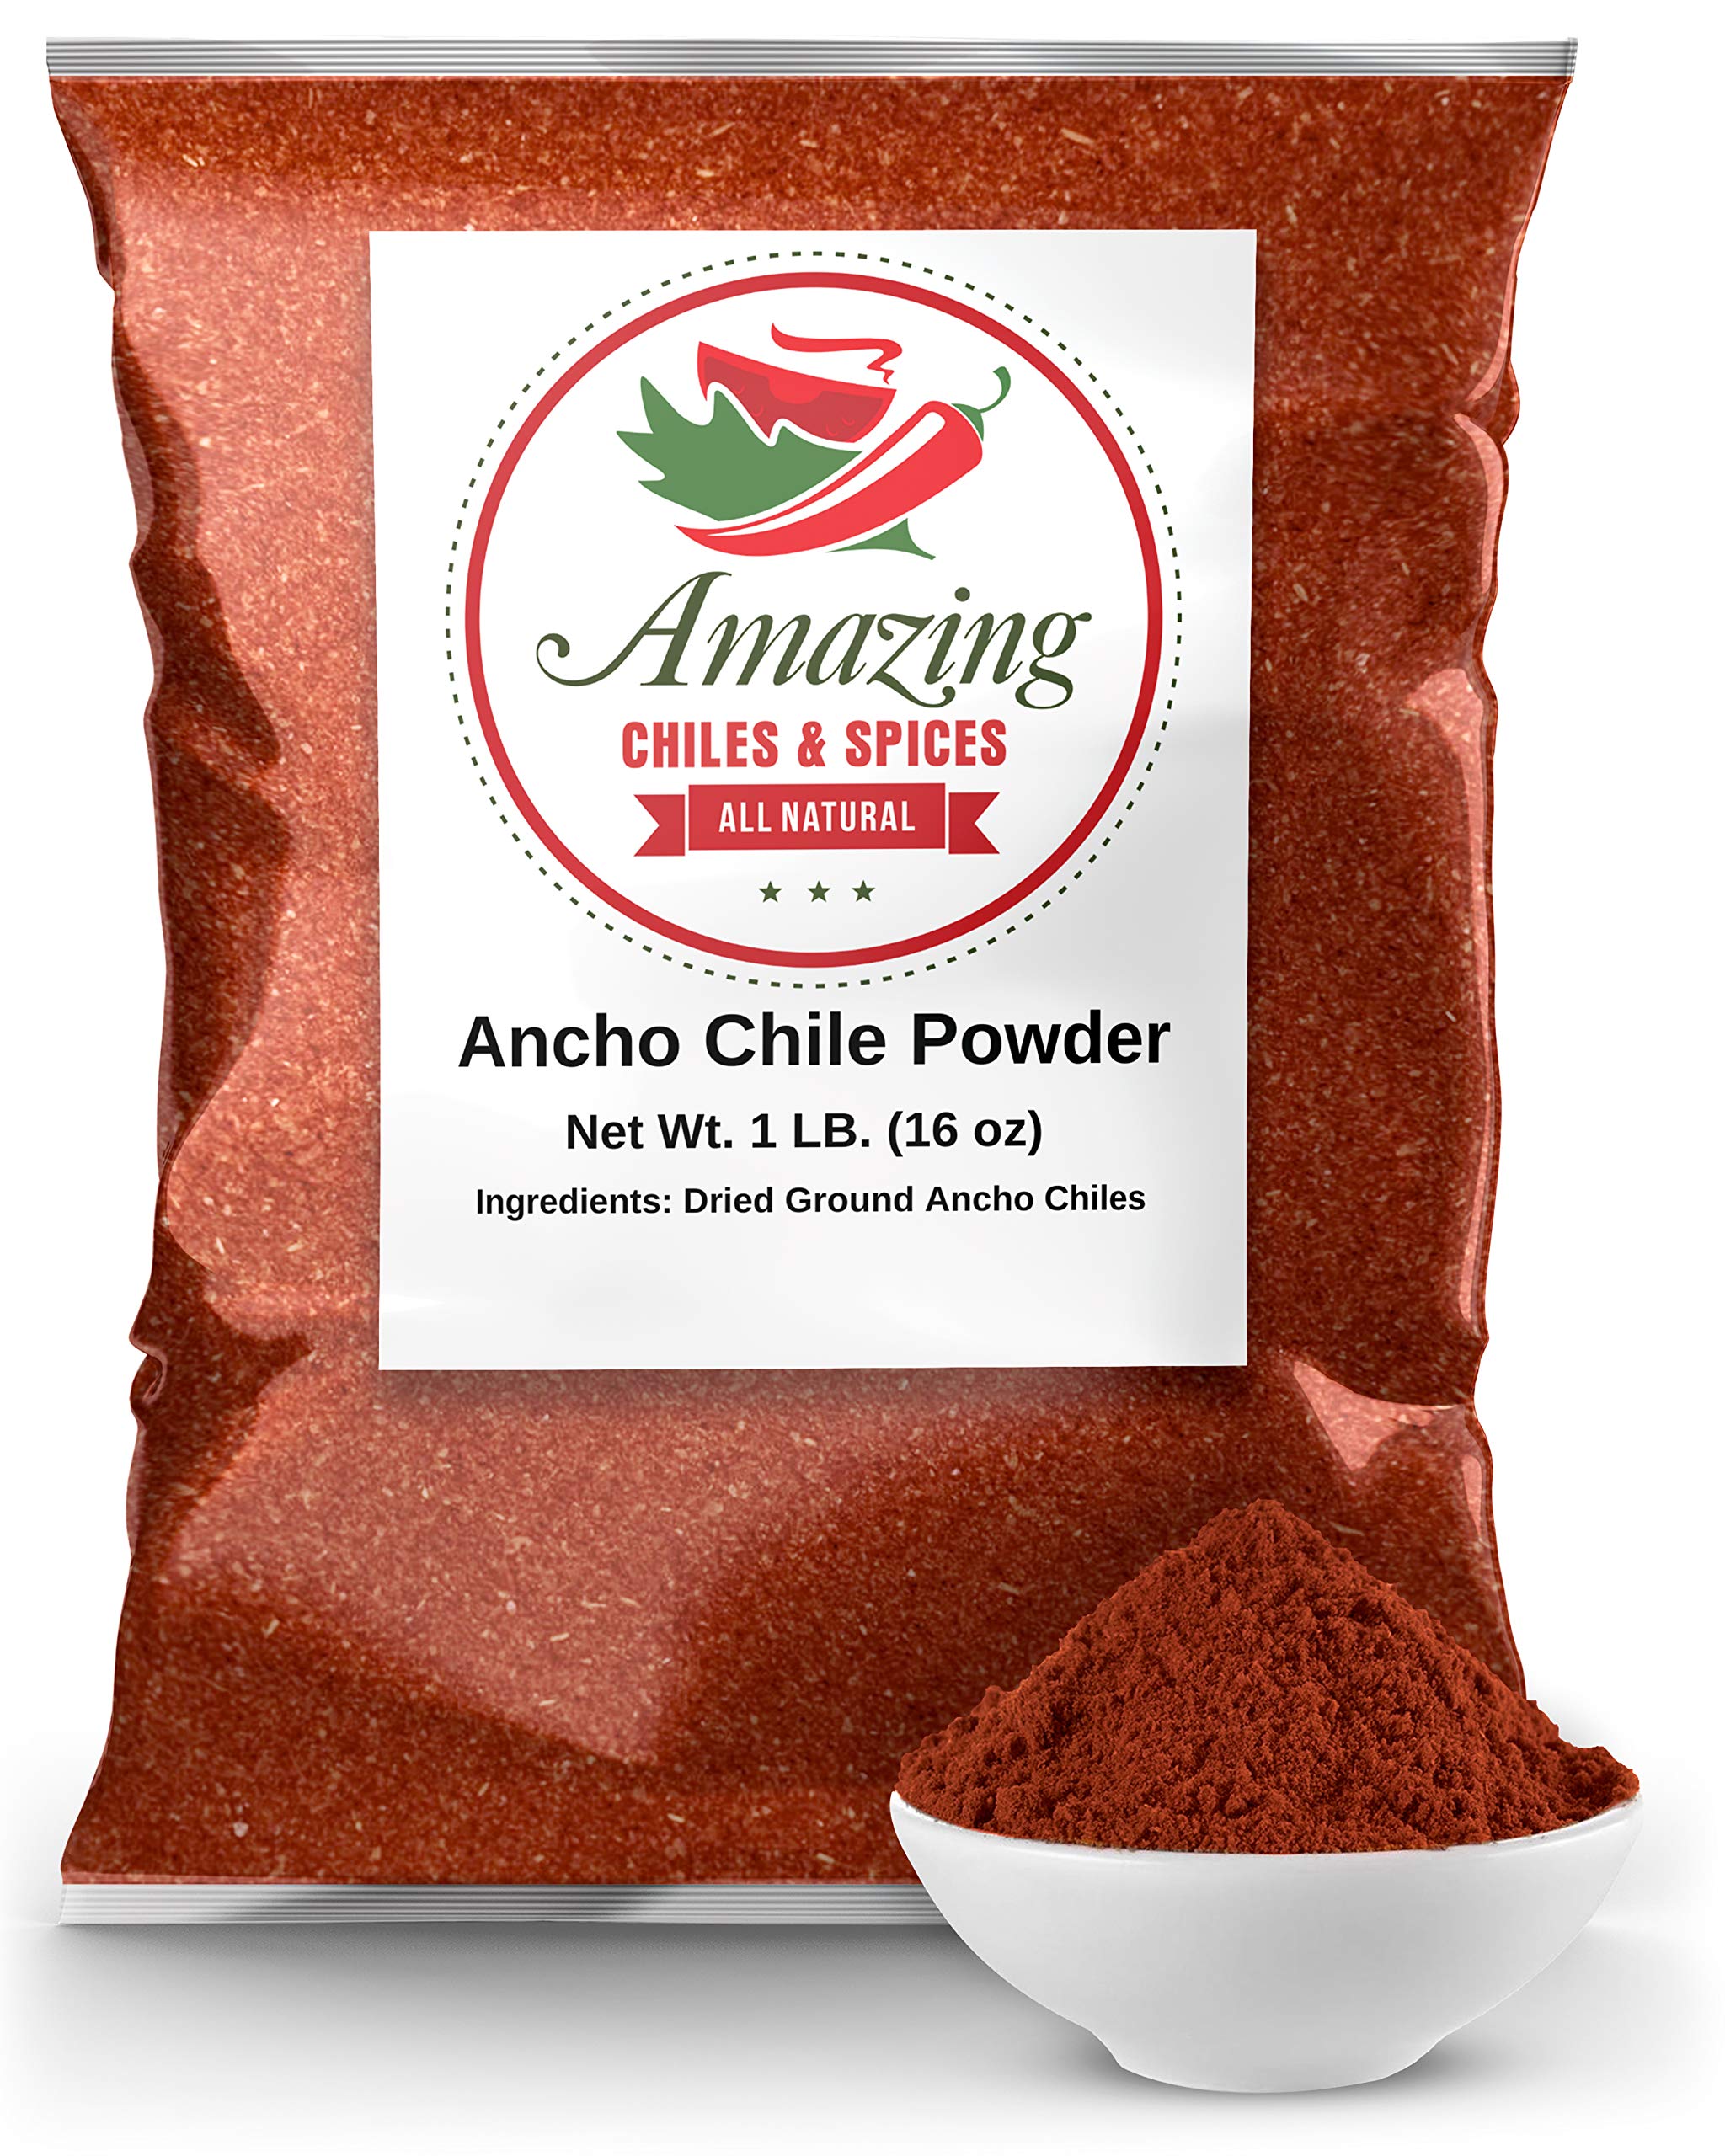 Ancho Chile Powder vs Chili Powder: Comparing Spice Blends